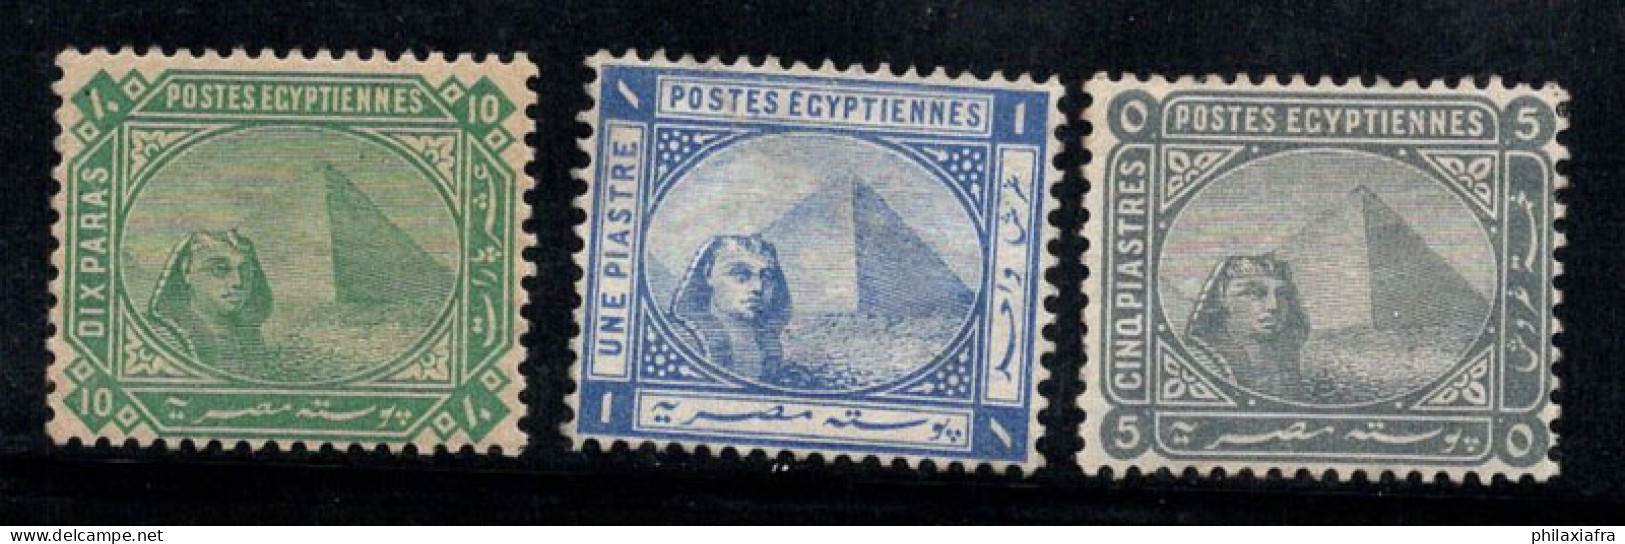 Égypte 1884 Mi. 32,34,35 Neuf * MH 80% Sphinx, Pyramide De Khéphren - 1866-1914 Khedivate Of Egypt